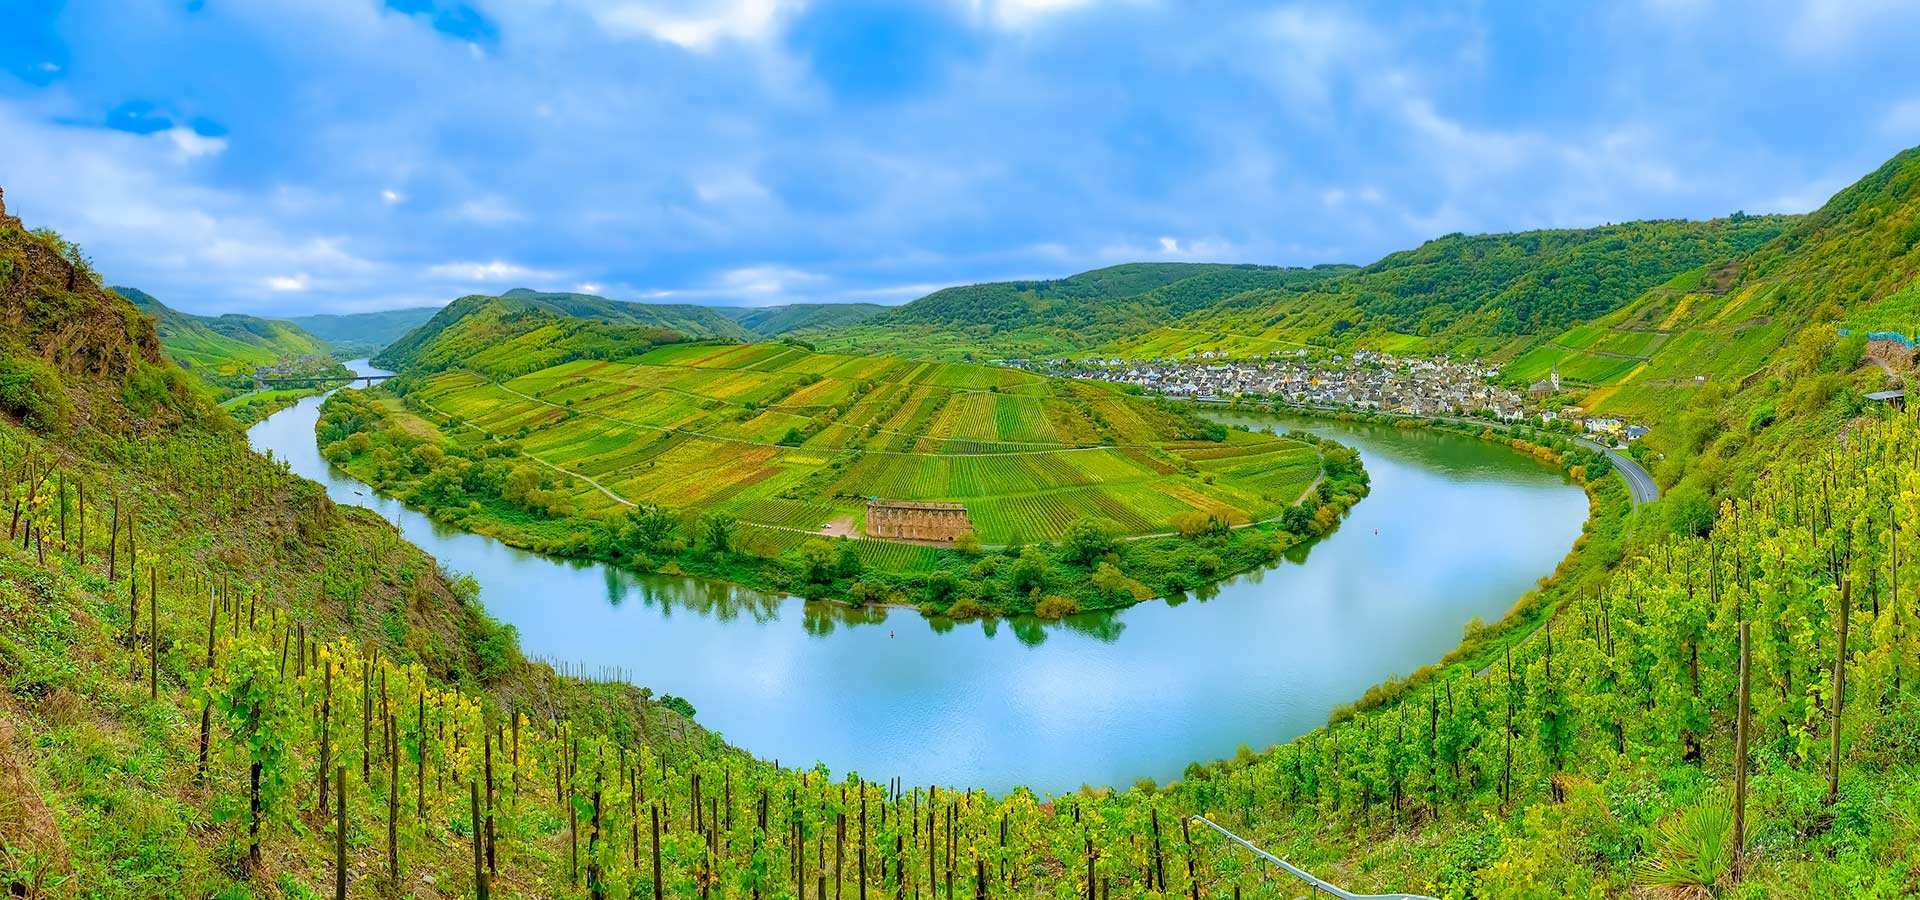 Das Weinbaugebiet Mosel ist weltberühmt für seine Rieslinge.